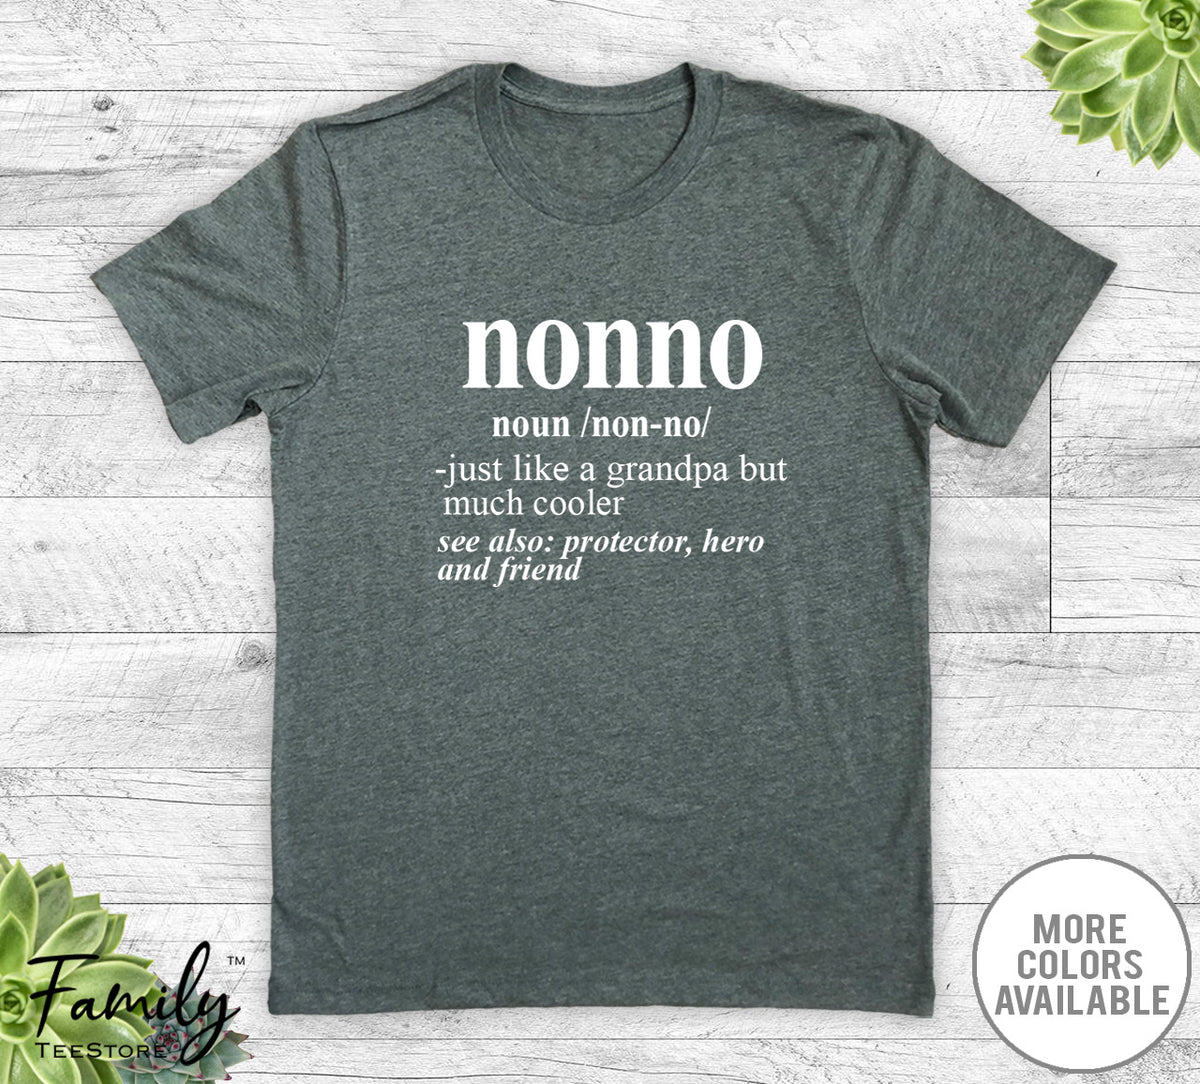 Nonno Noun - Unisex T-shirt - Nonno Shirt - Nonno Gift - familyteeprints